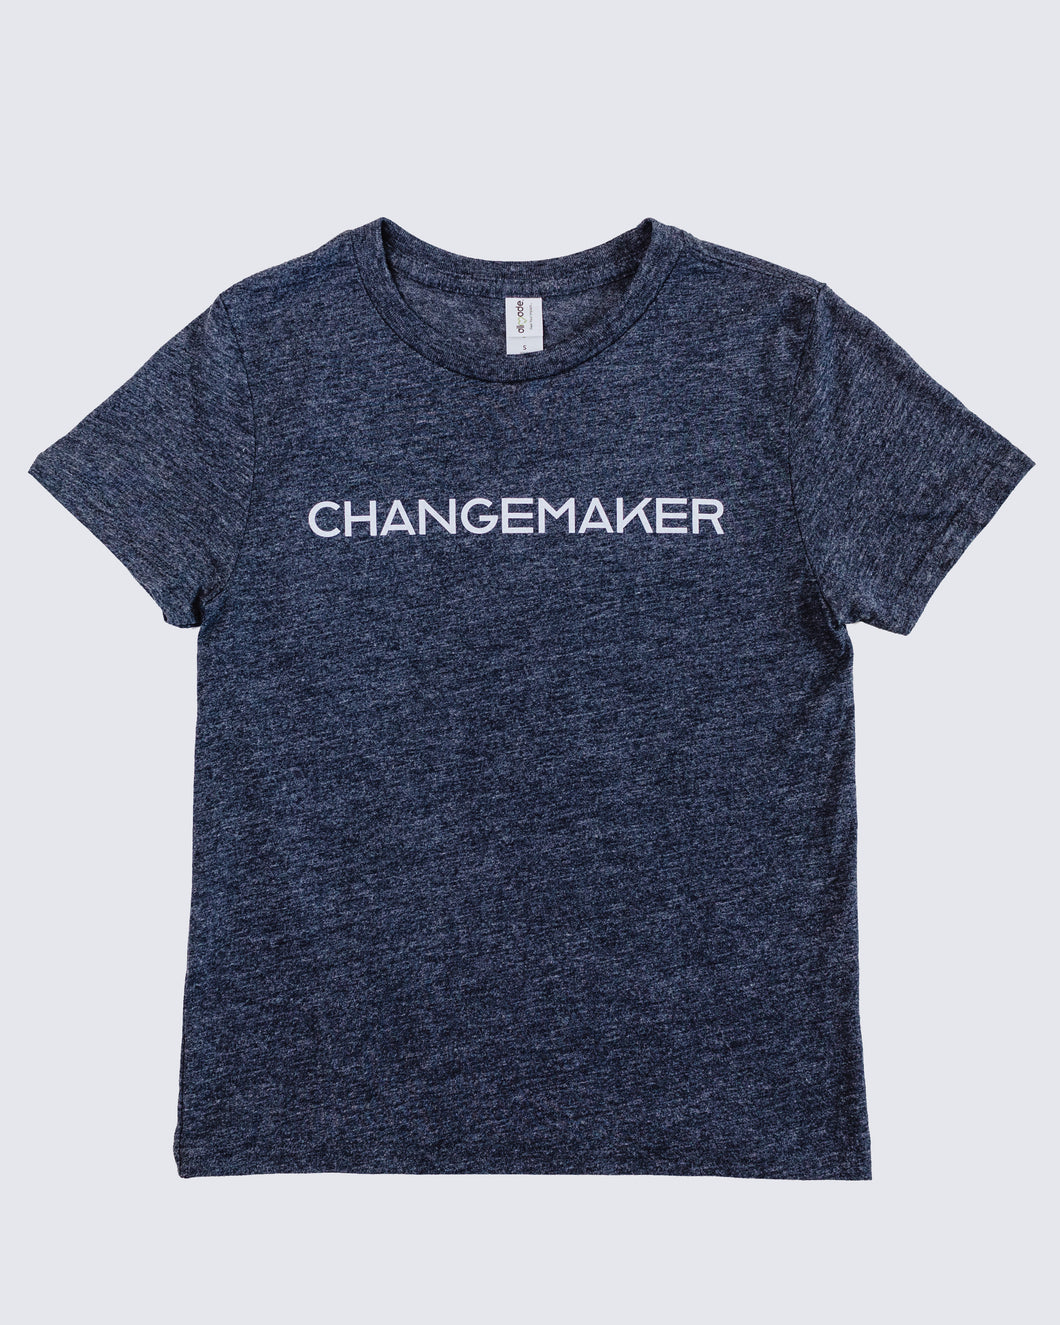 ChangeMaker Kid's T-Shirt